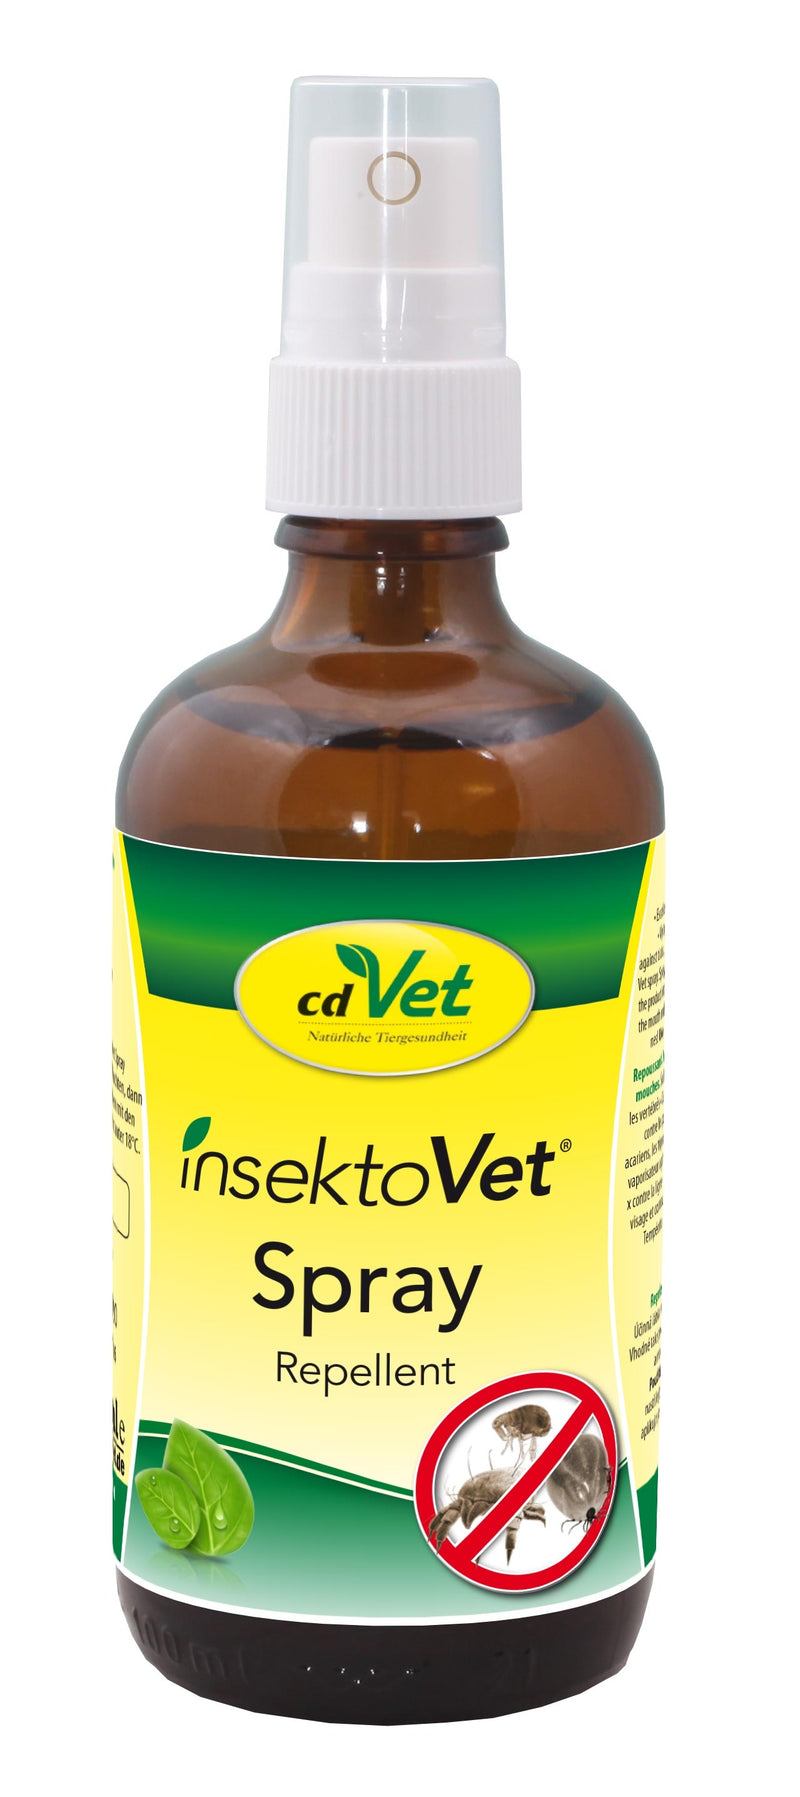 insektoVet Spray 10 Liter